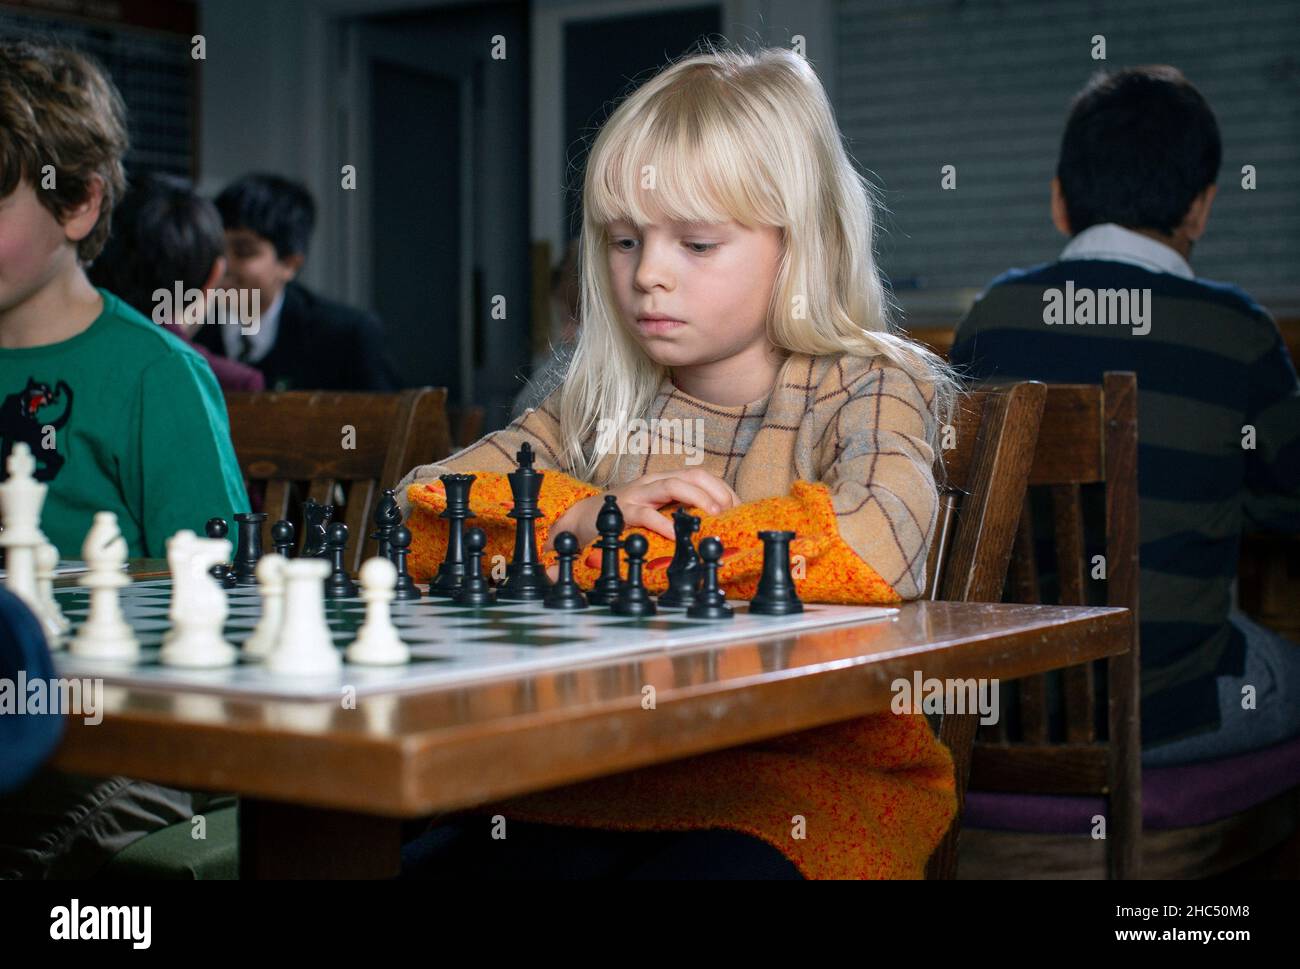 Jeux intelligents.Un enfant joue aux échecs. Fille et un échiquier.Stratégie.Pensée logique. Petite fille joue aux échecs Banque D'Images